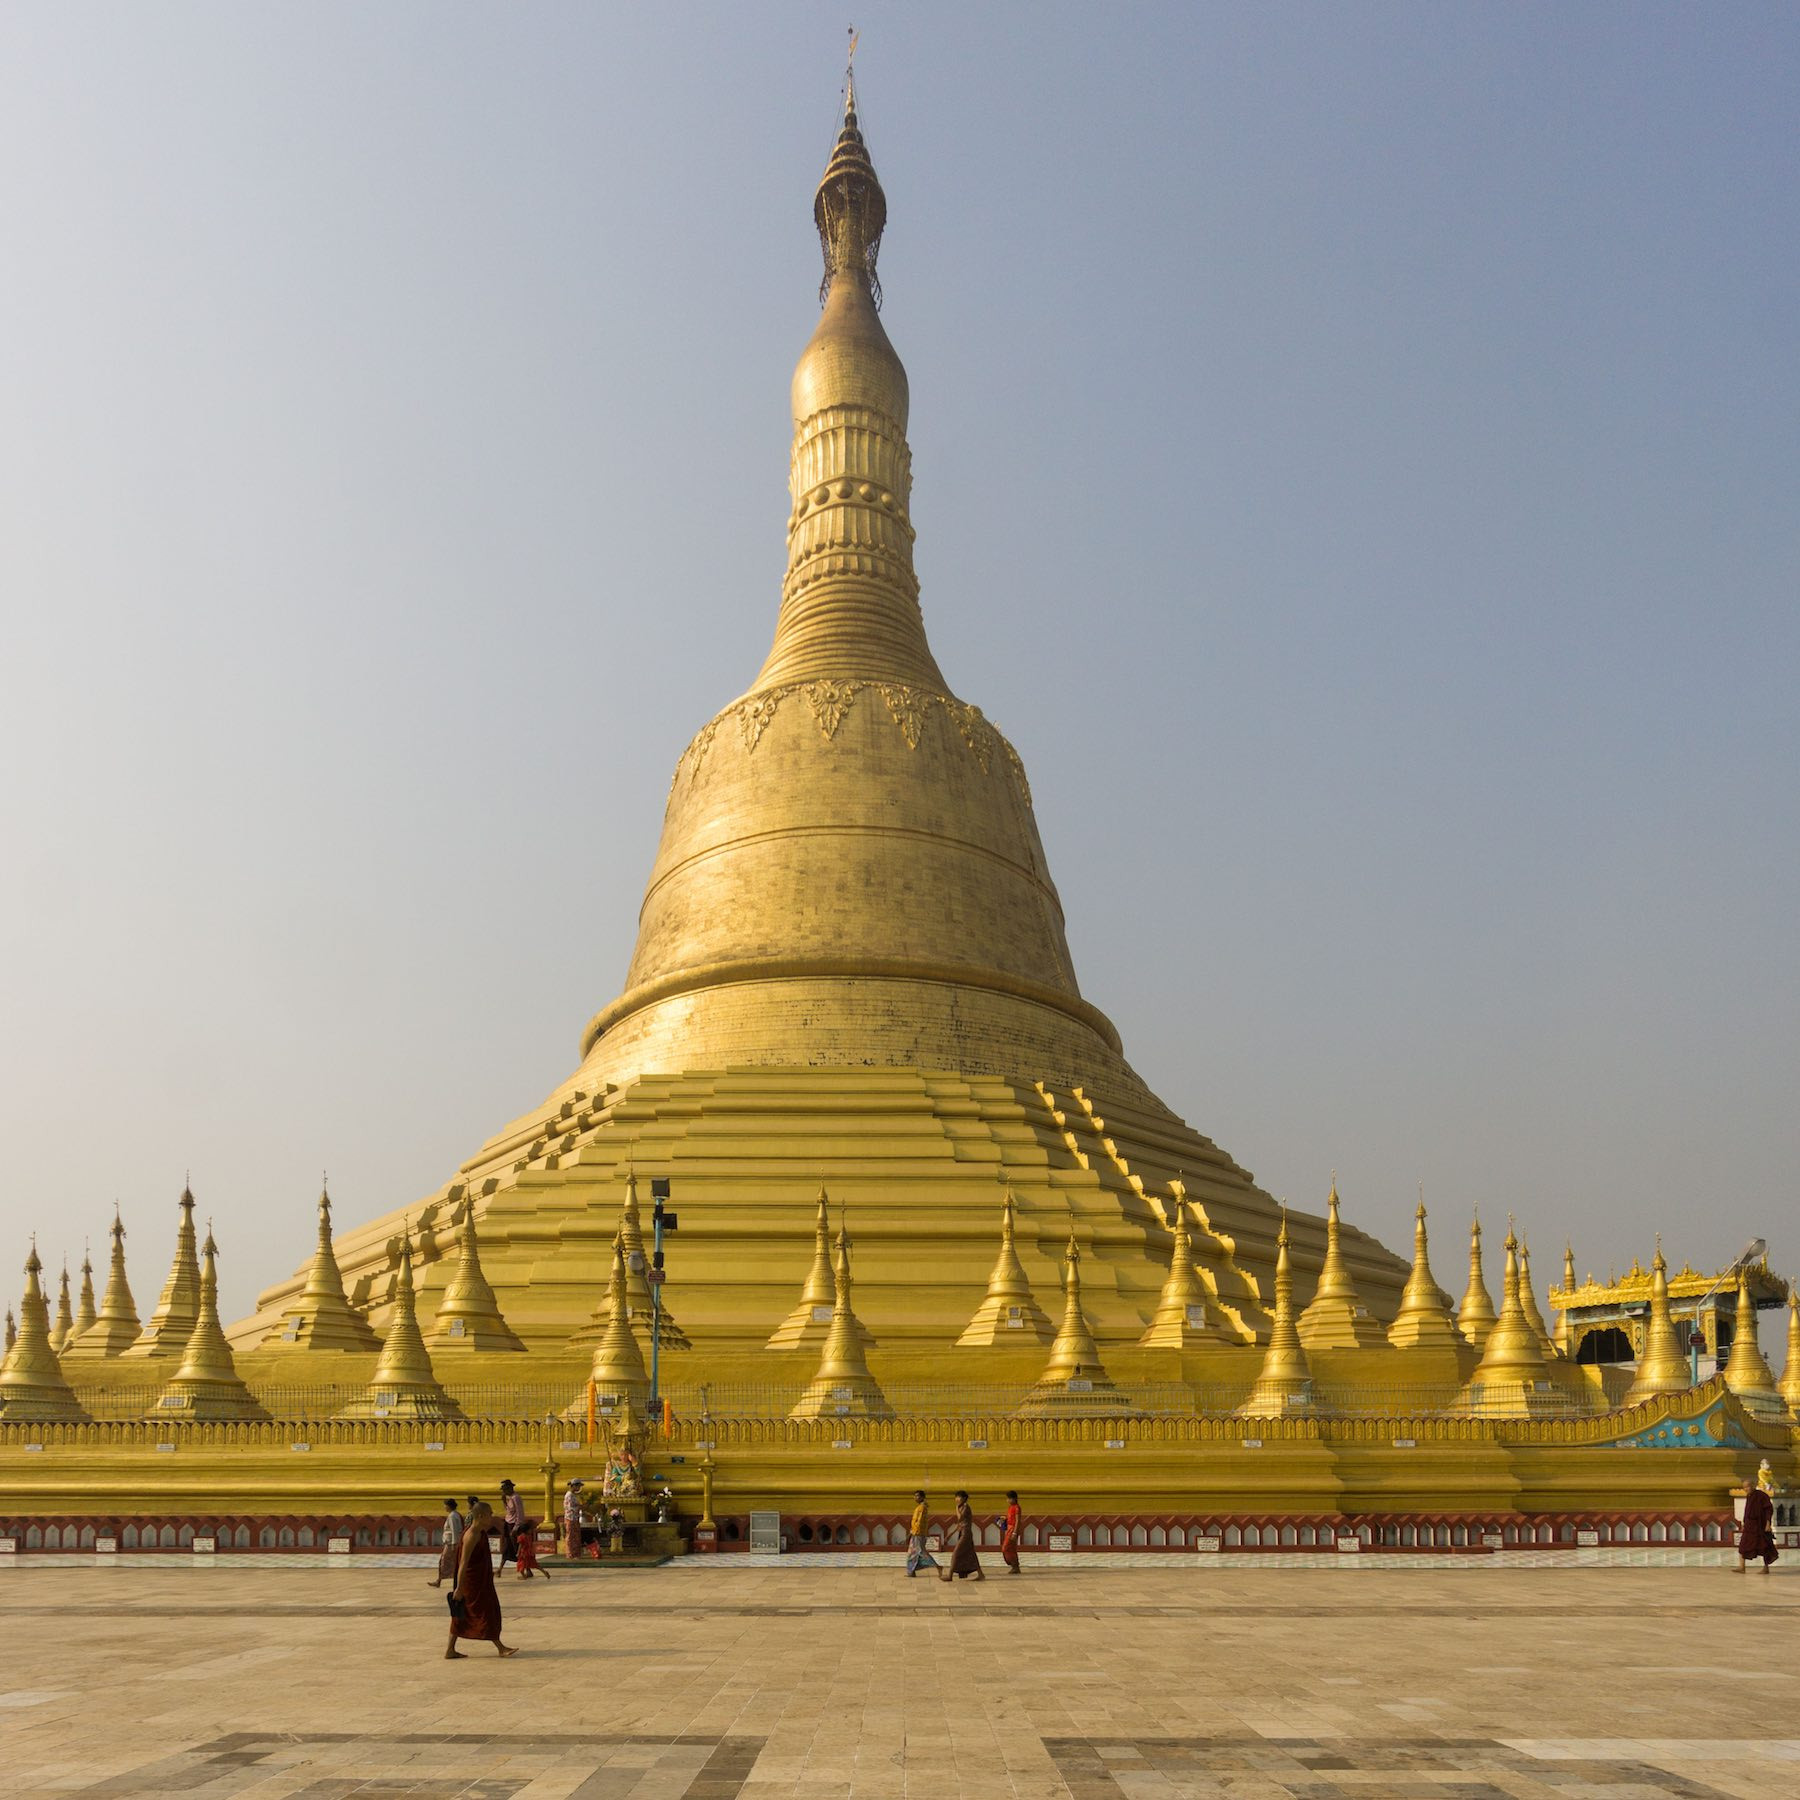 Chiêm ngưỡng ngôi chùa Shwe Maw Daw cao nhất Myanmar - ảnh 4